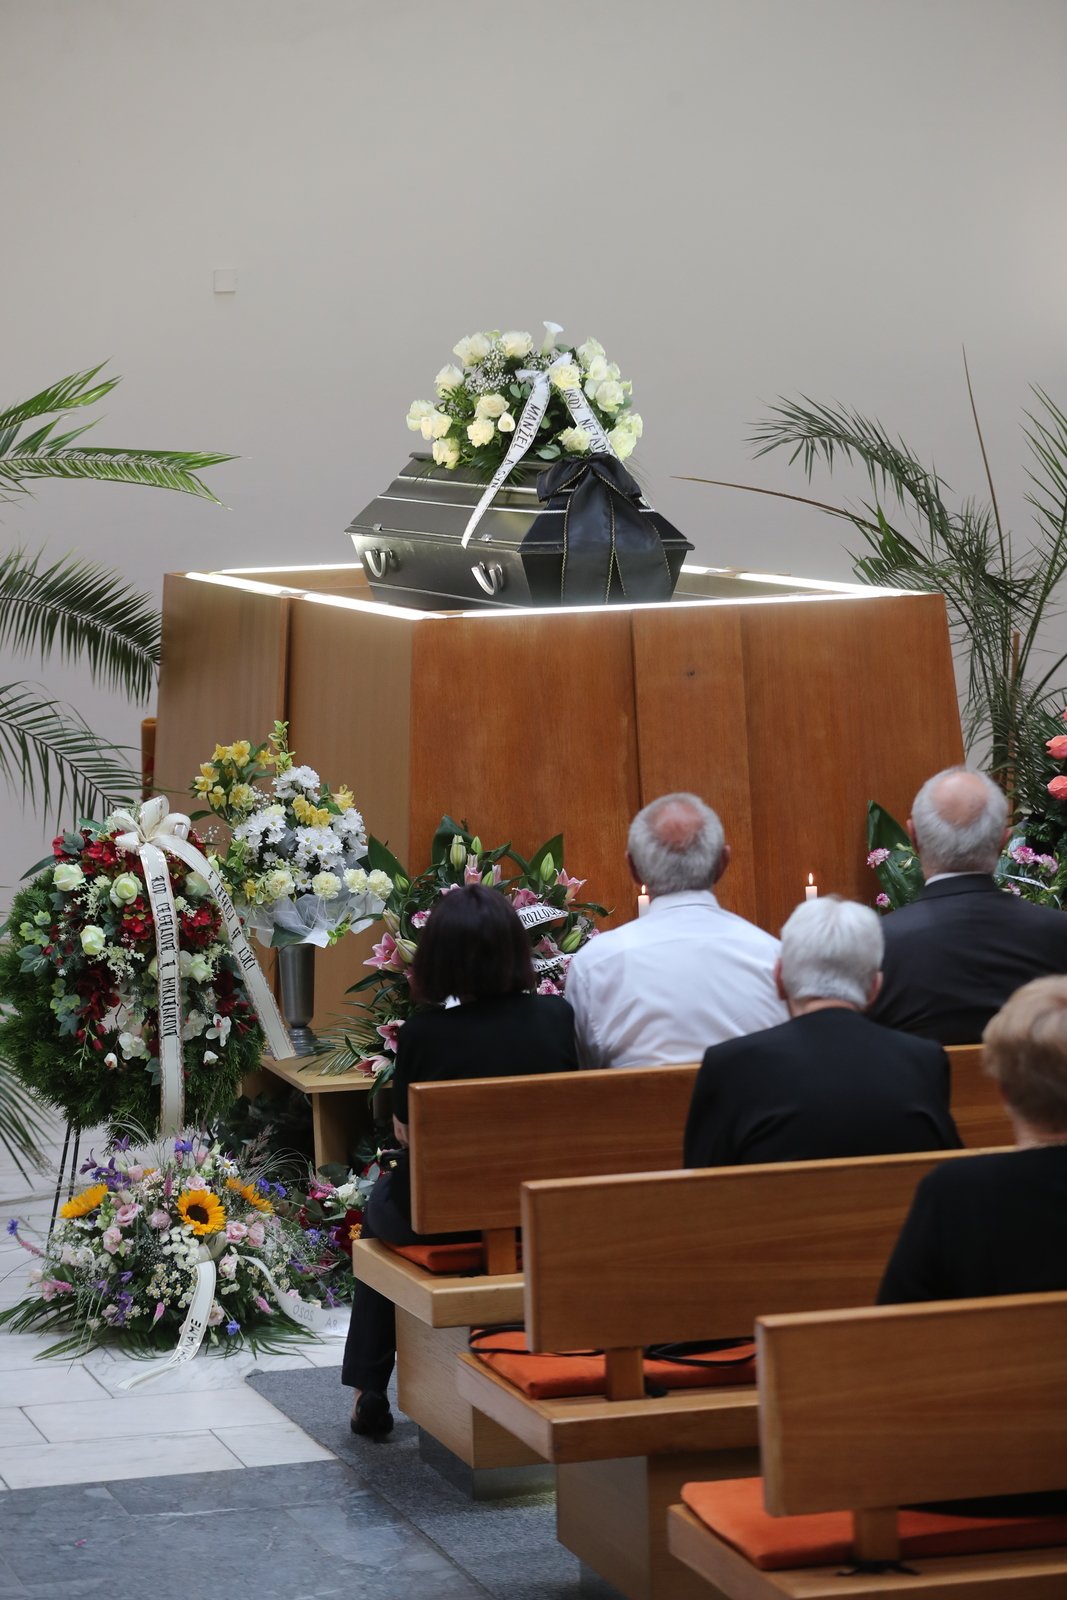 Pohřeb učitelky Marie v Hodoníně.